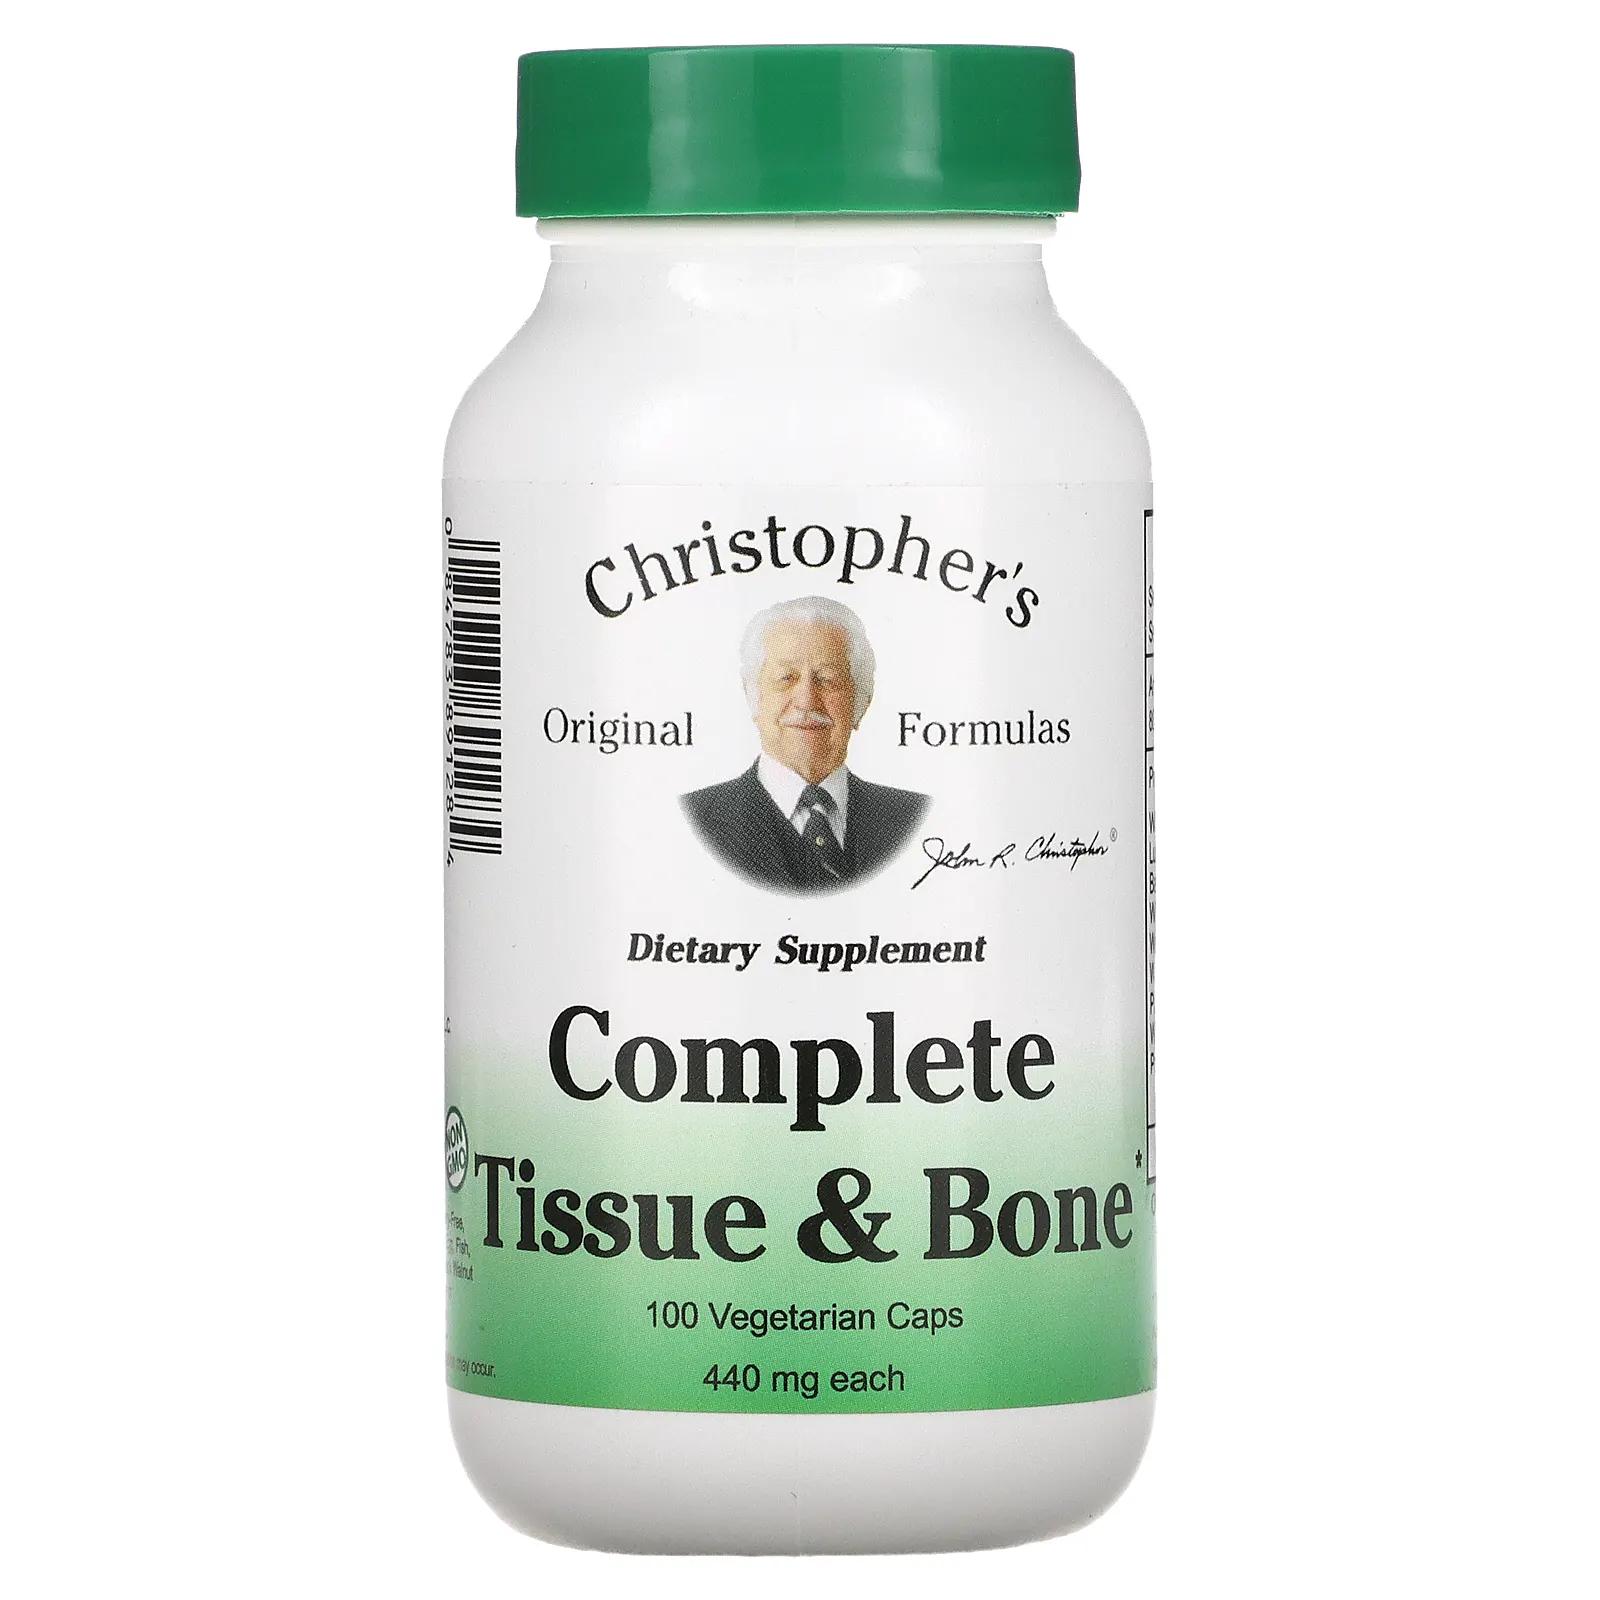 Christopher's Original Formulas Здоровье тканей и костей 440 мг каждая 100 капсул в растительной оболочке